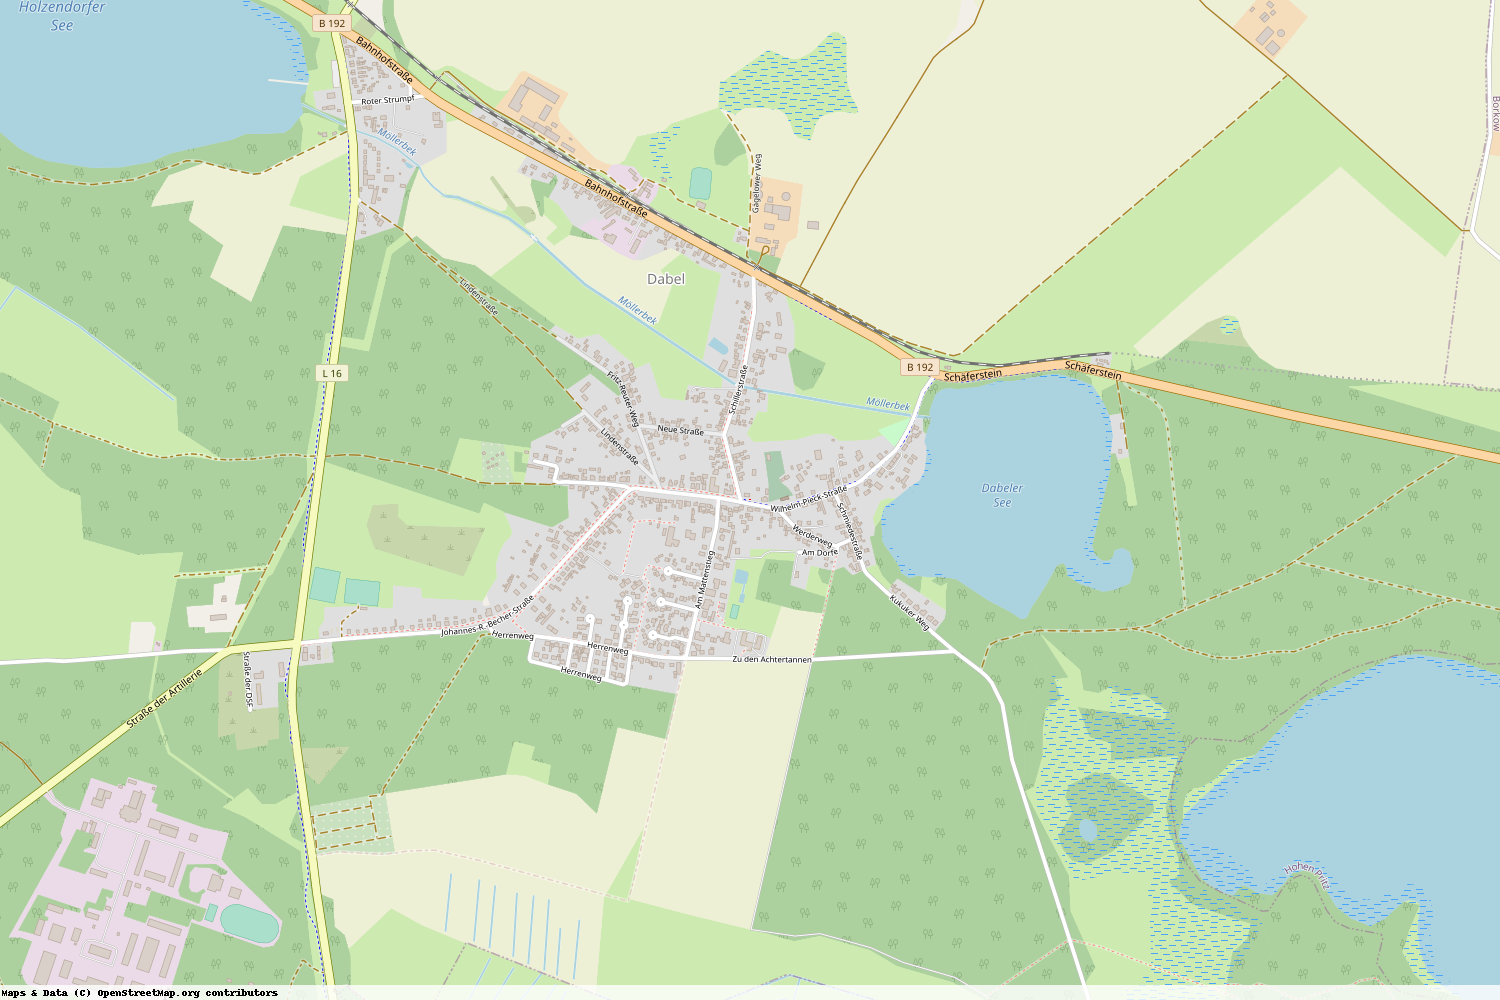 Ist gerade Stromausfall in Mecklenburg-Vorpommern - Ludwigslust-Parchim - Dabel?